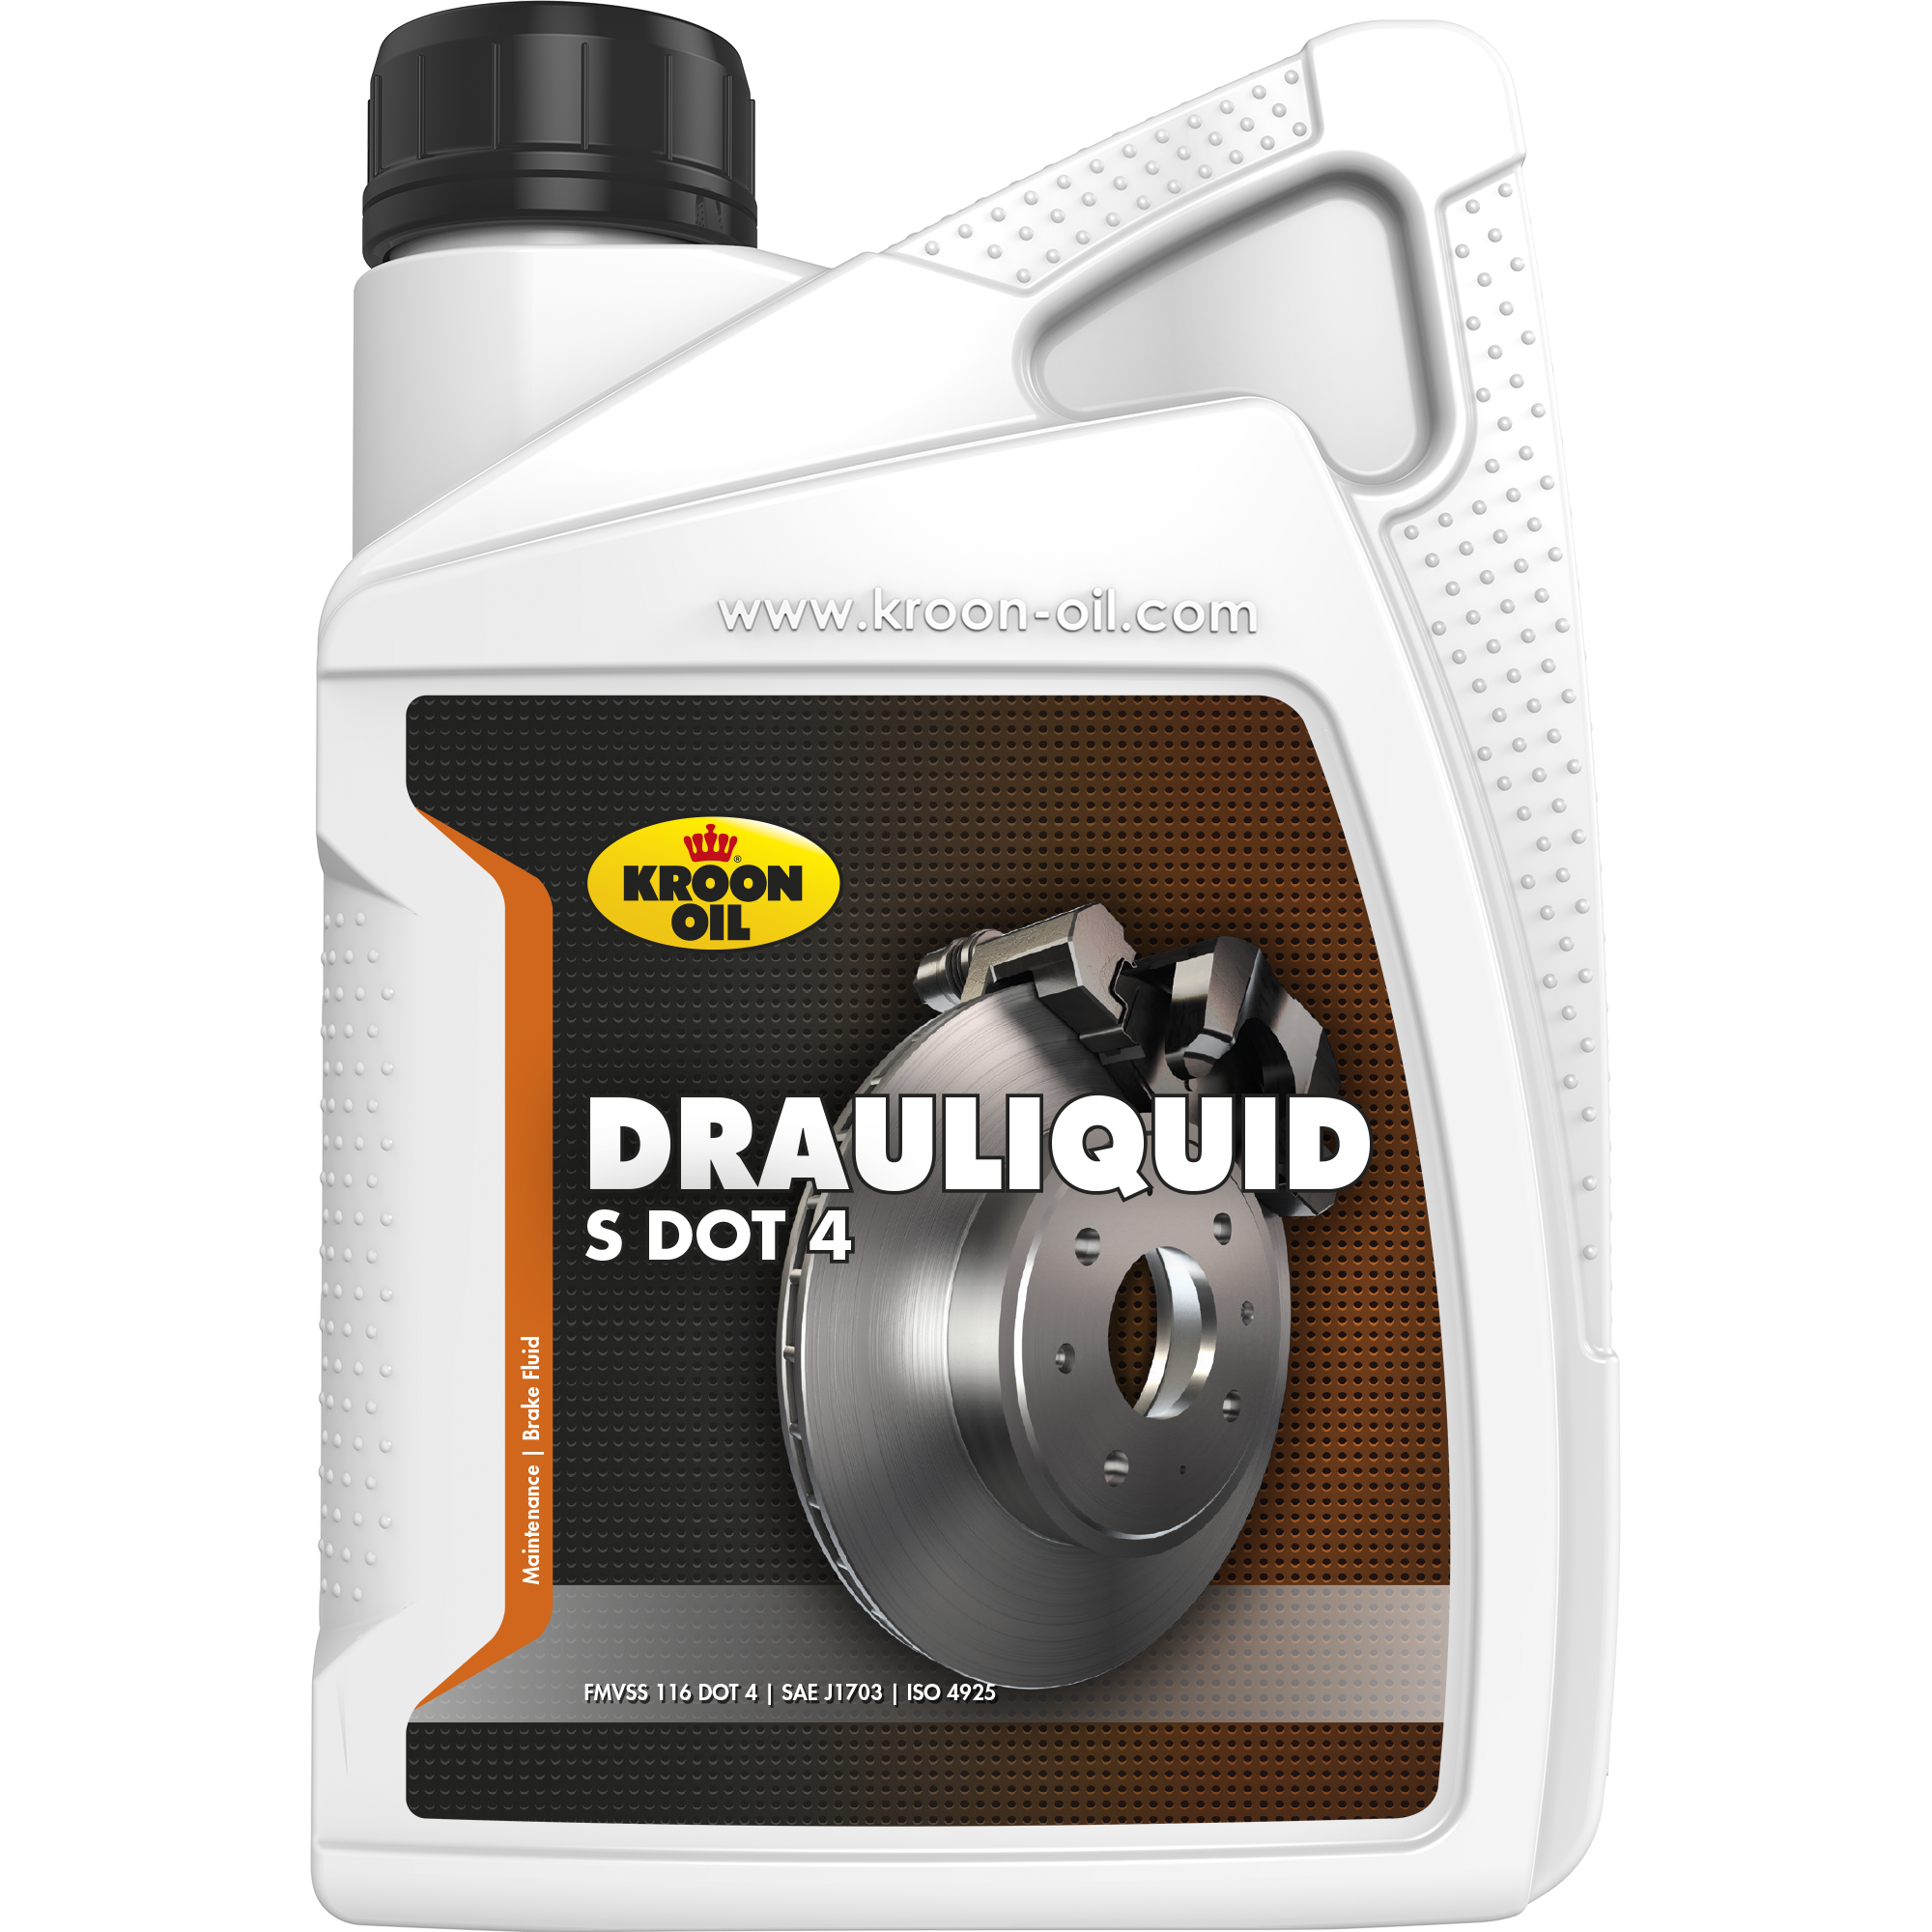 Kroon-Oil Drauliquid-S DOT 4, 12 x 1 lt detail 2